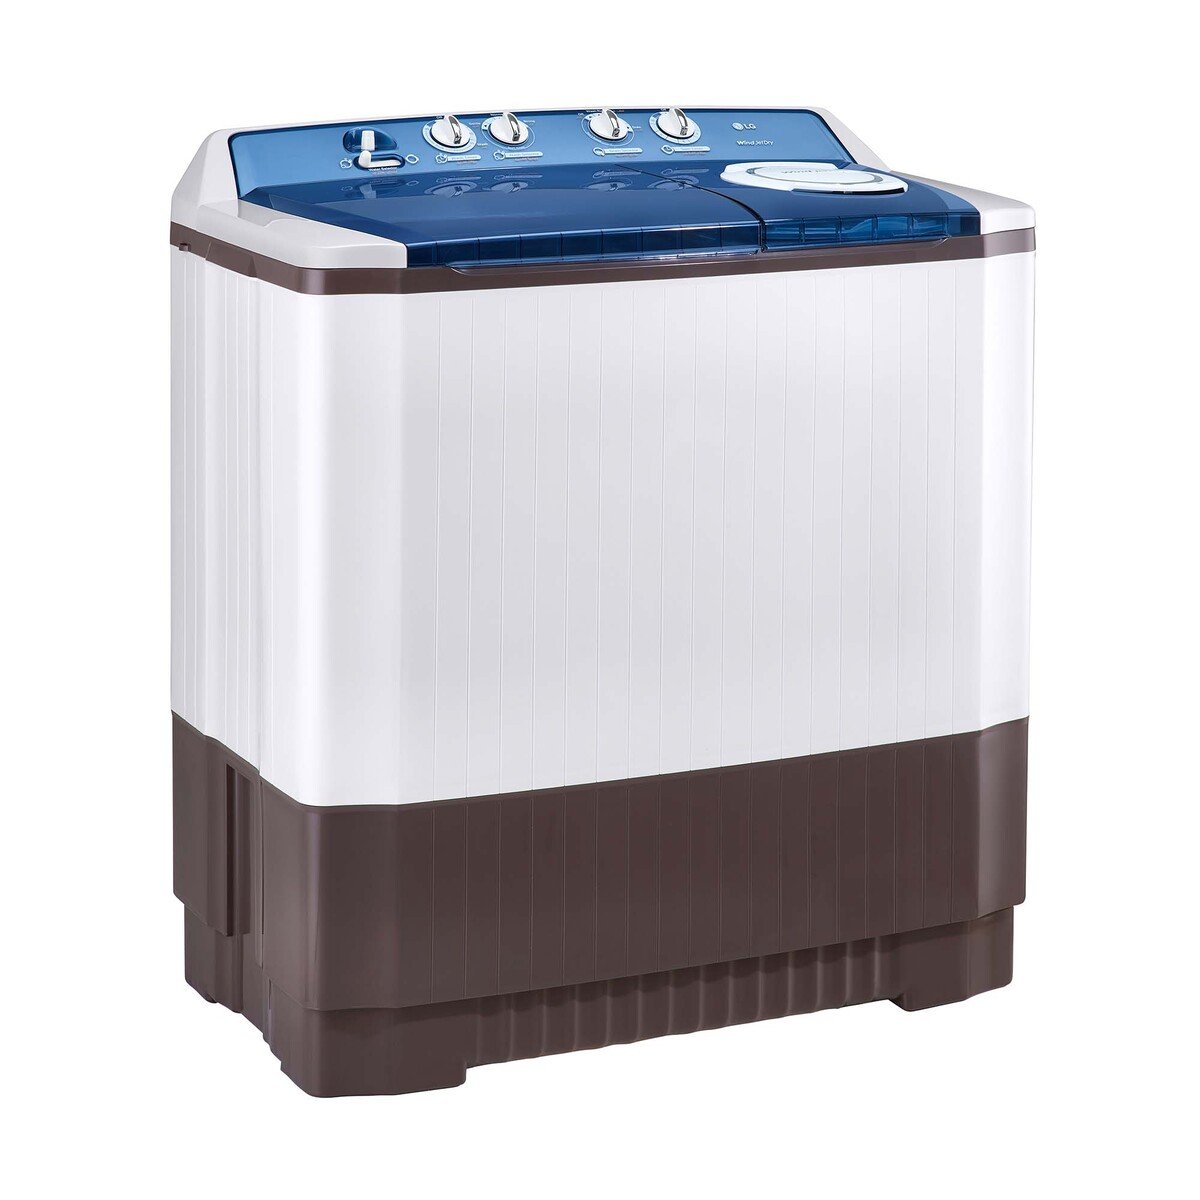 LG Twin Tub Top Load Washing Machine P1860RWN 14Kg, Roller Jet Pulsator, Punch +3